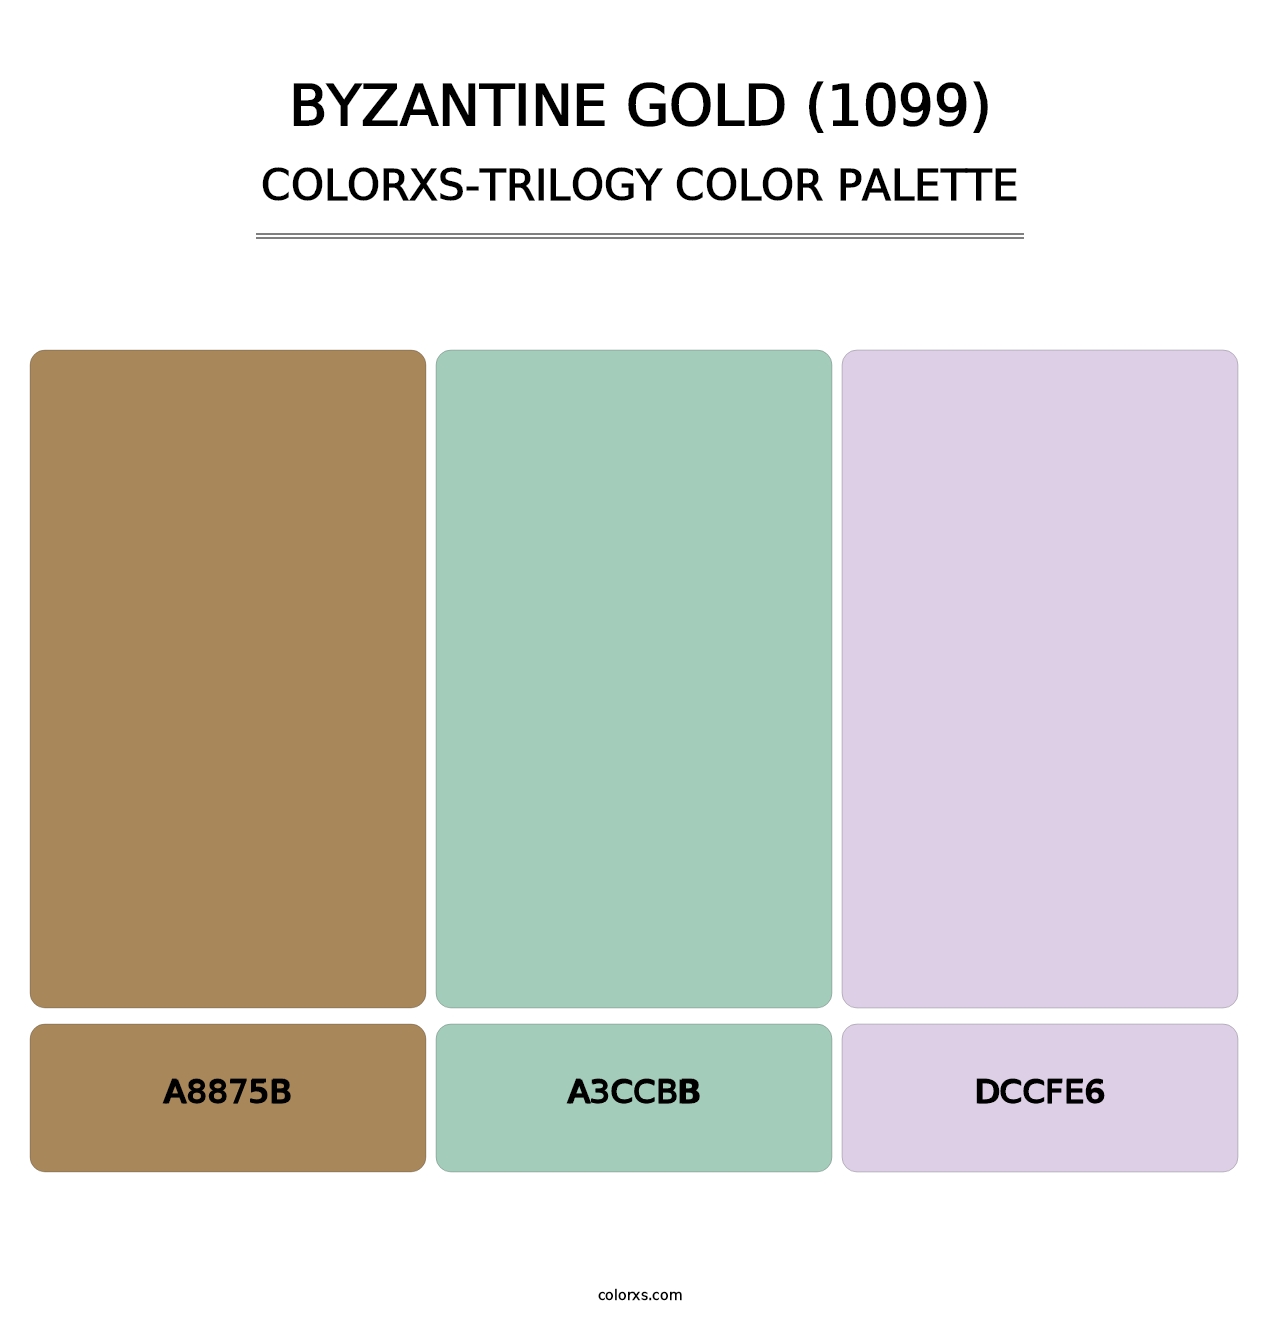 Byzantine Gold (1099) - Colorxs Trilogy Palette